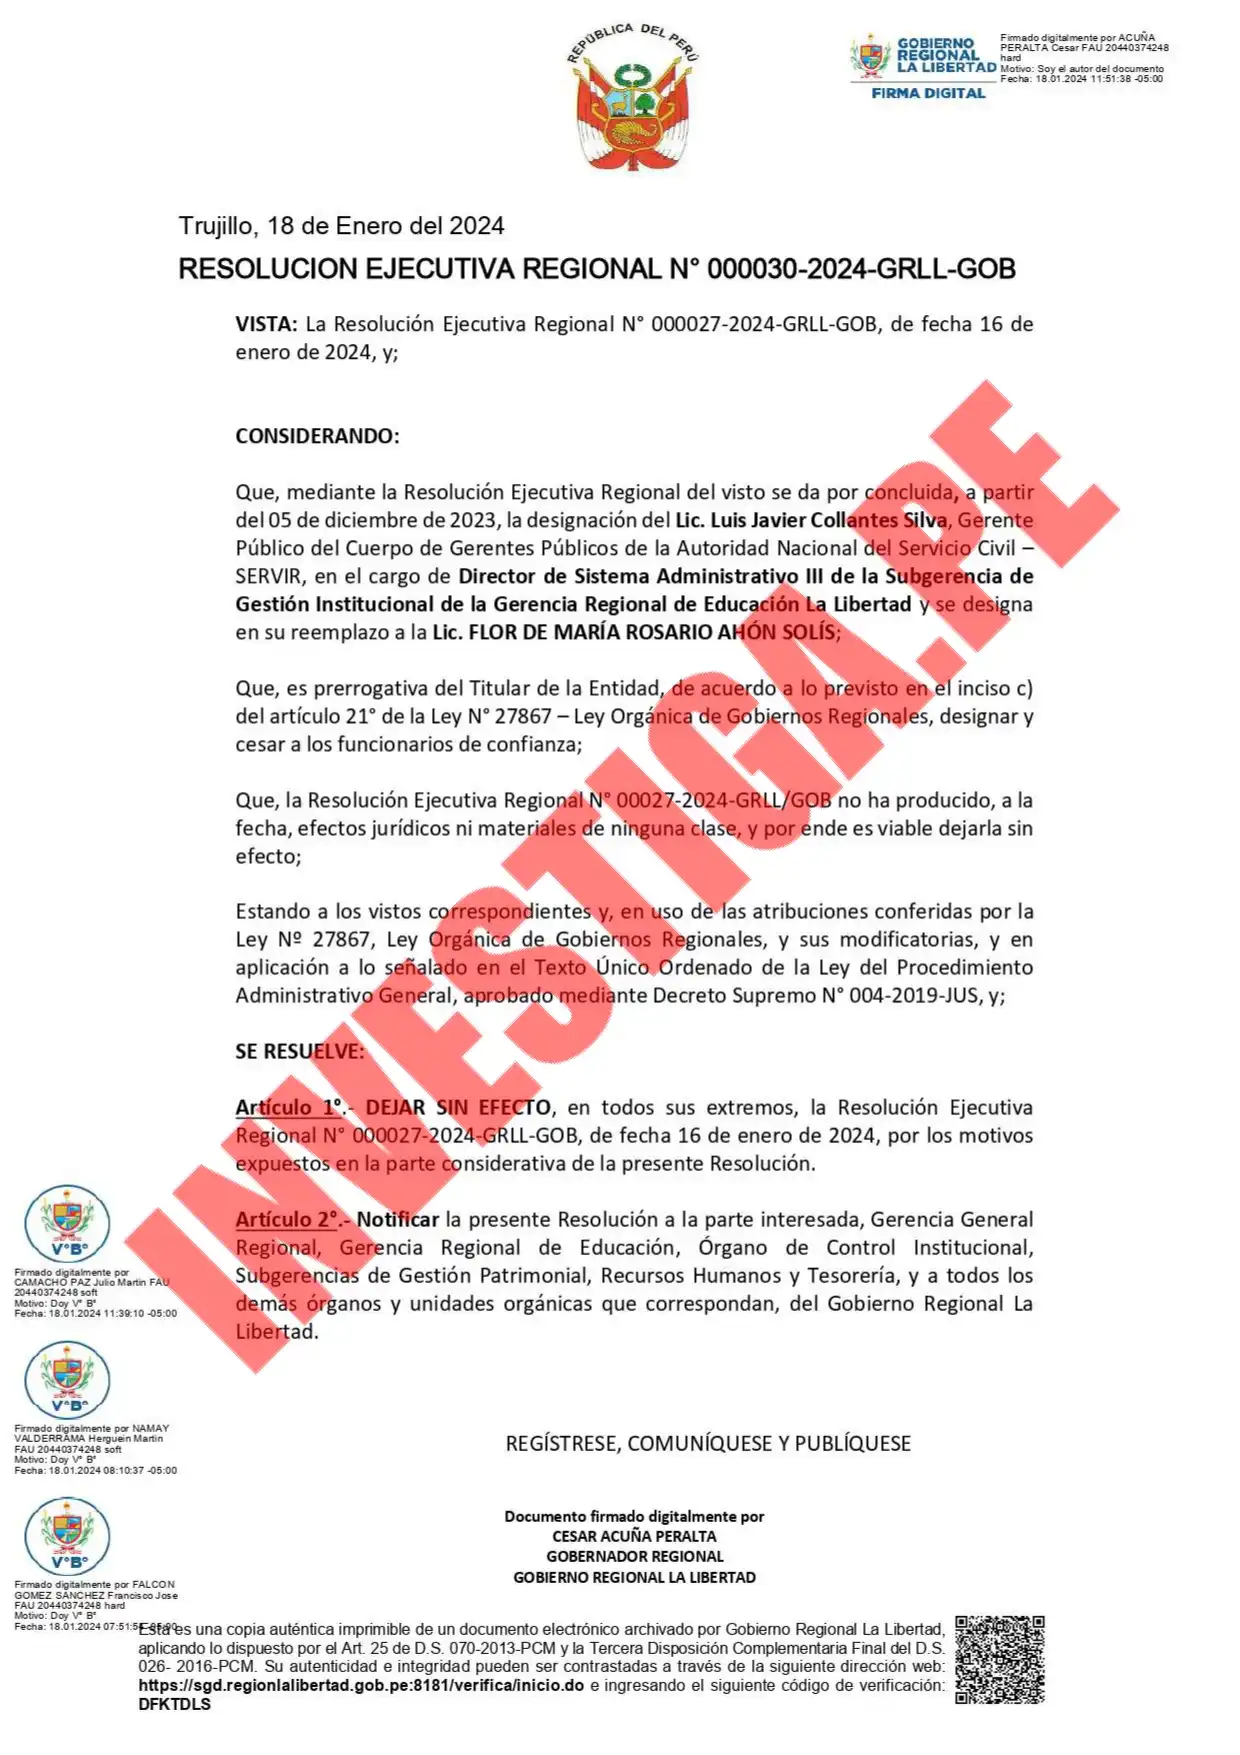 La resolución firmada por Acuña dejando sin efecto la designación de la funcionaria de Educación fue emitida al día siguiente de la denuncia.